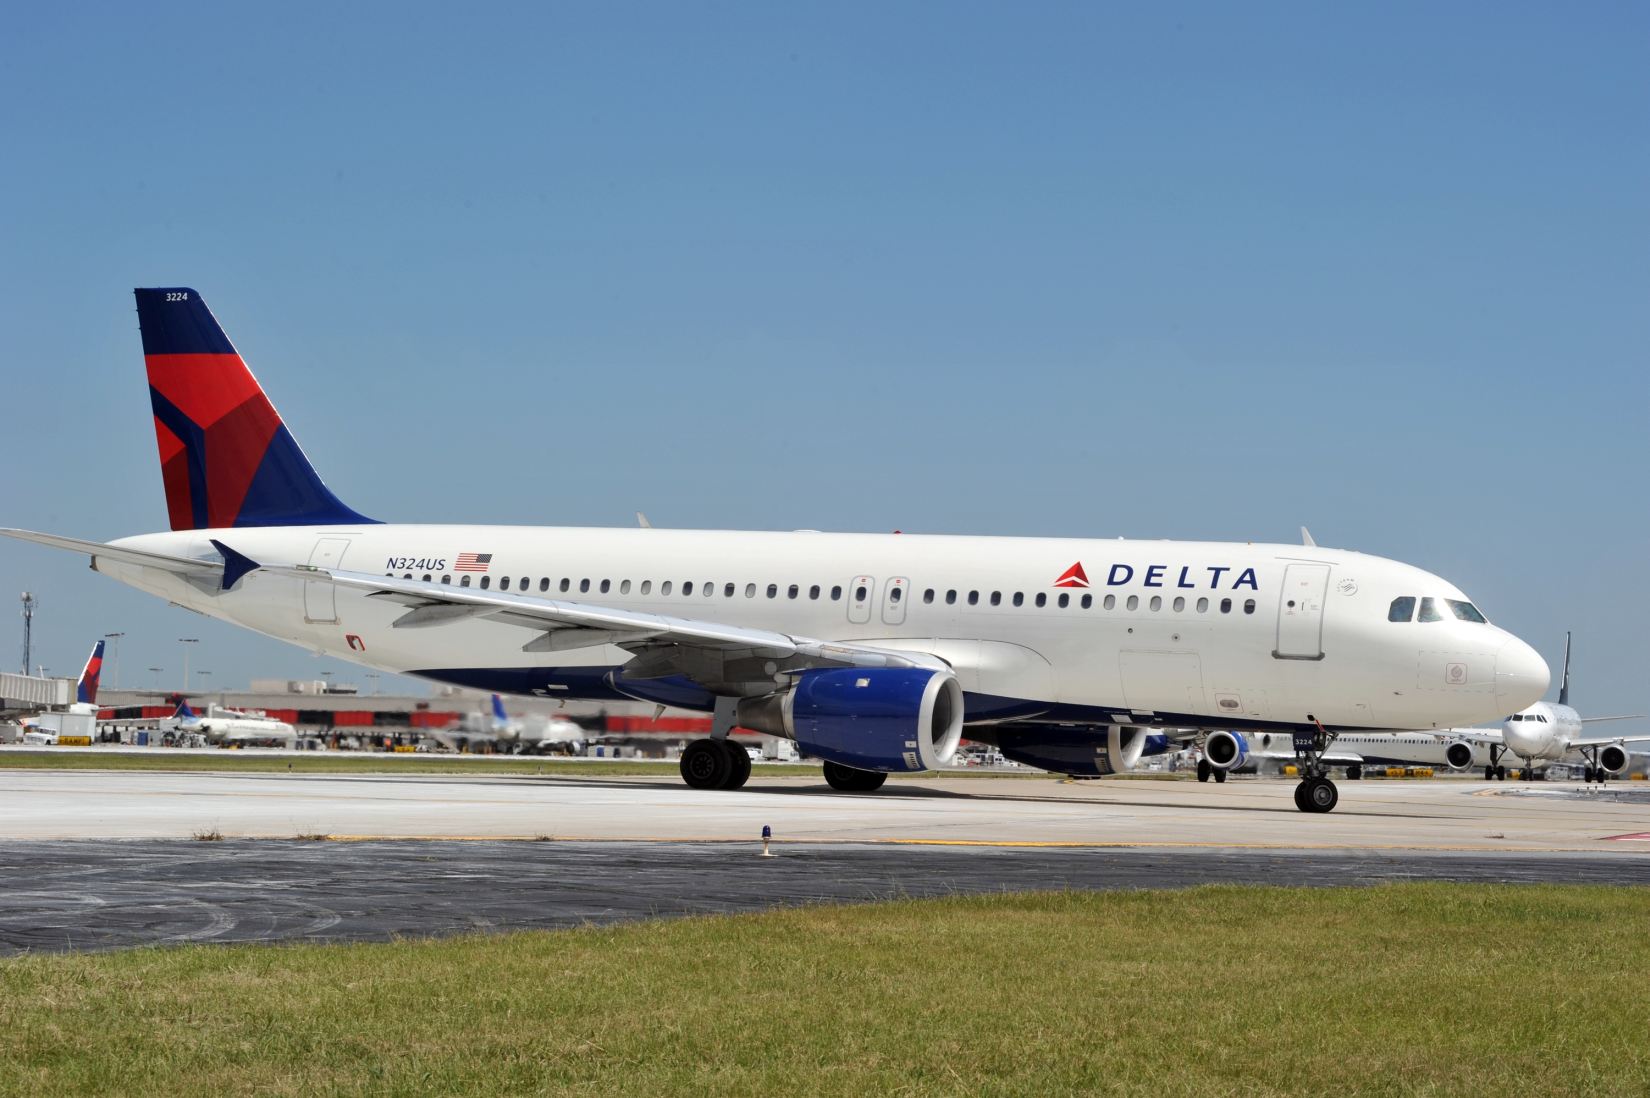 Airbus Delta-színekben: az ameirkai légitársaságok szívesebben veszik majd az amerikai A320-ast